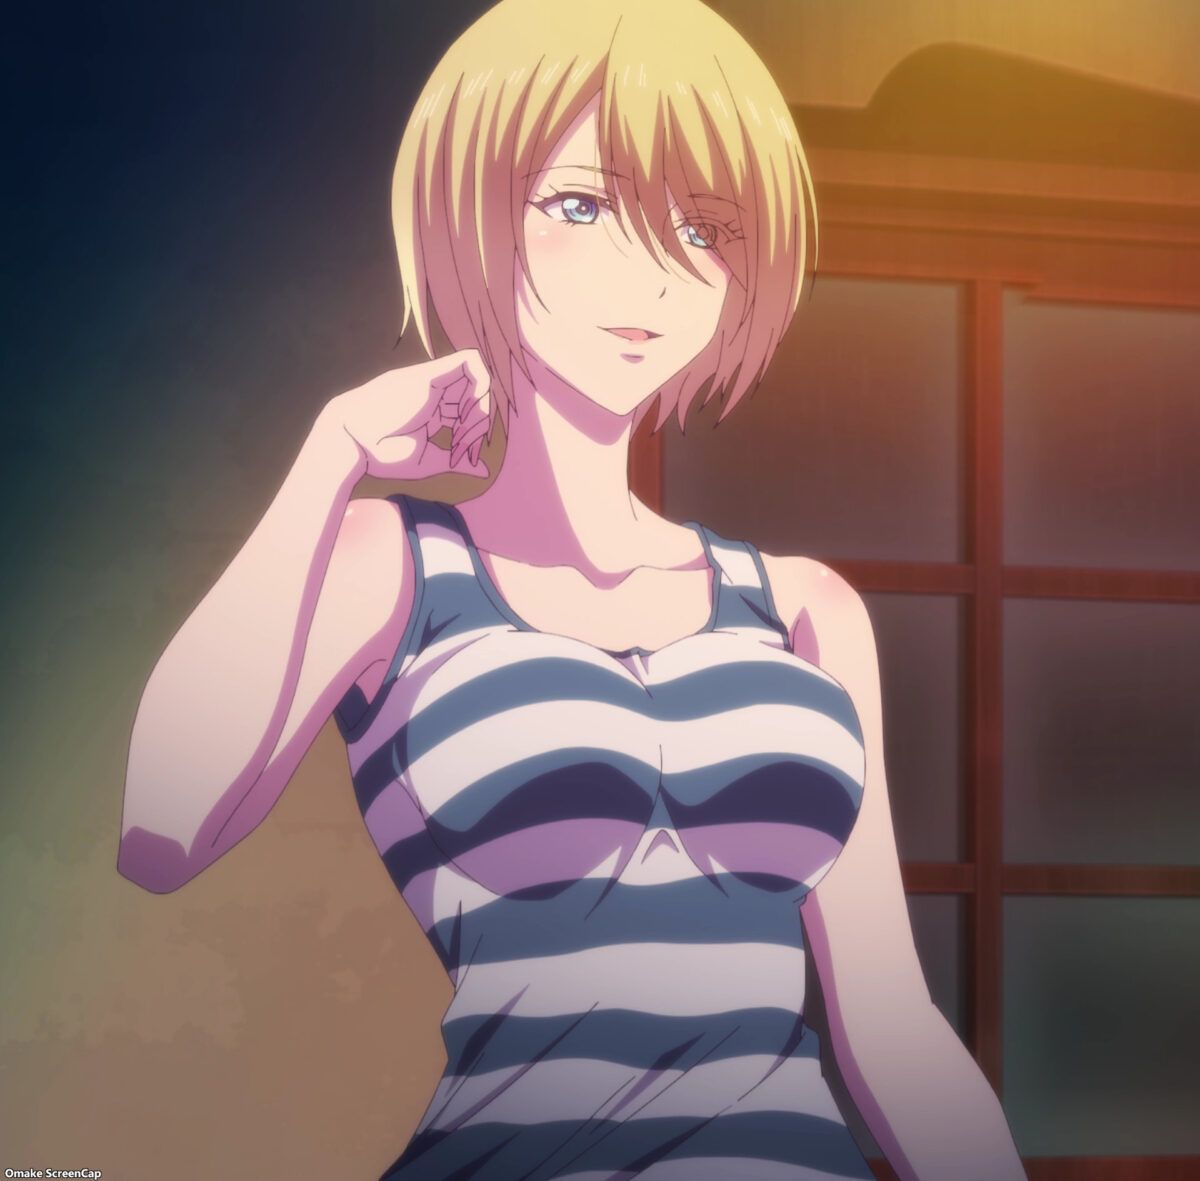 Goddess Cafe Terrace Episode 7 Akane Wears Striped Tank Top